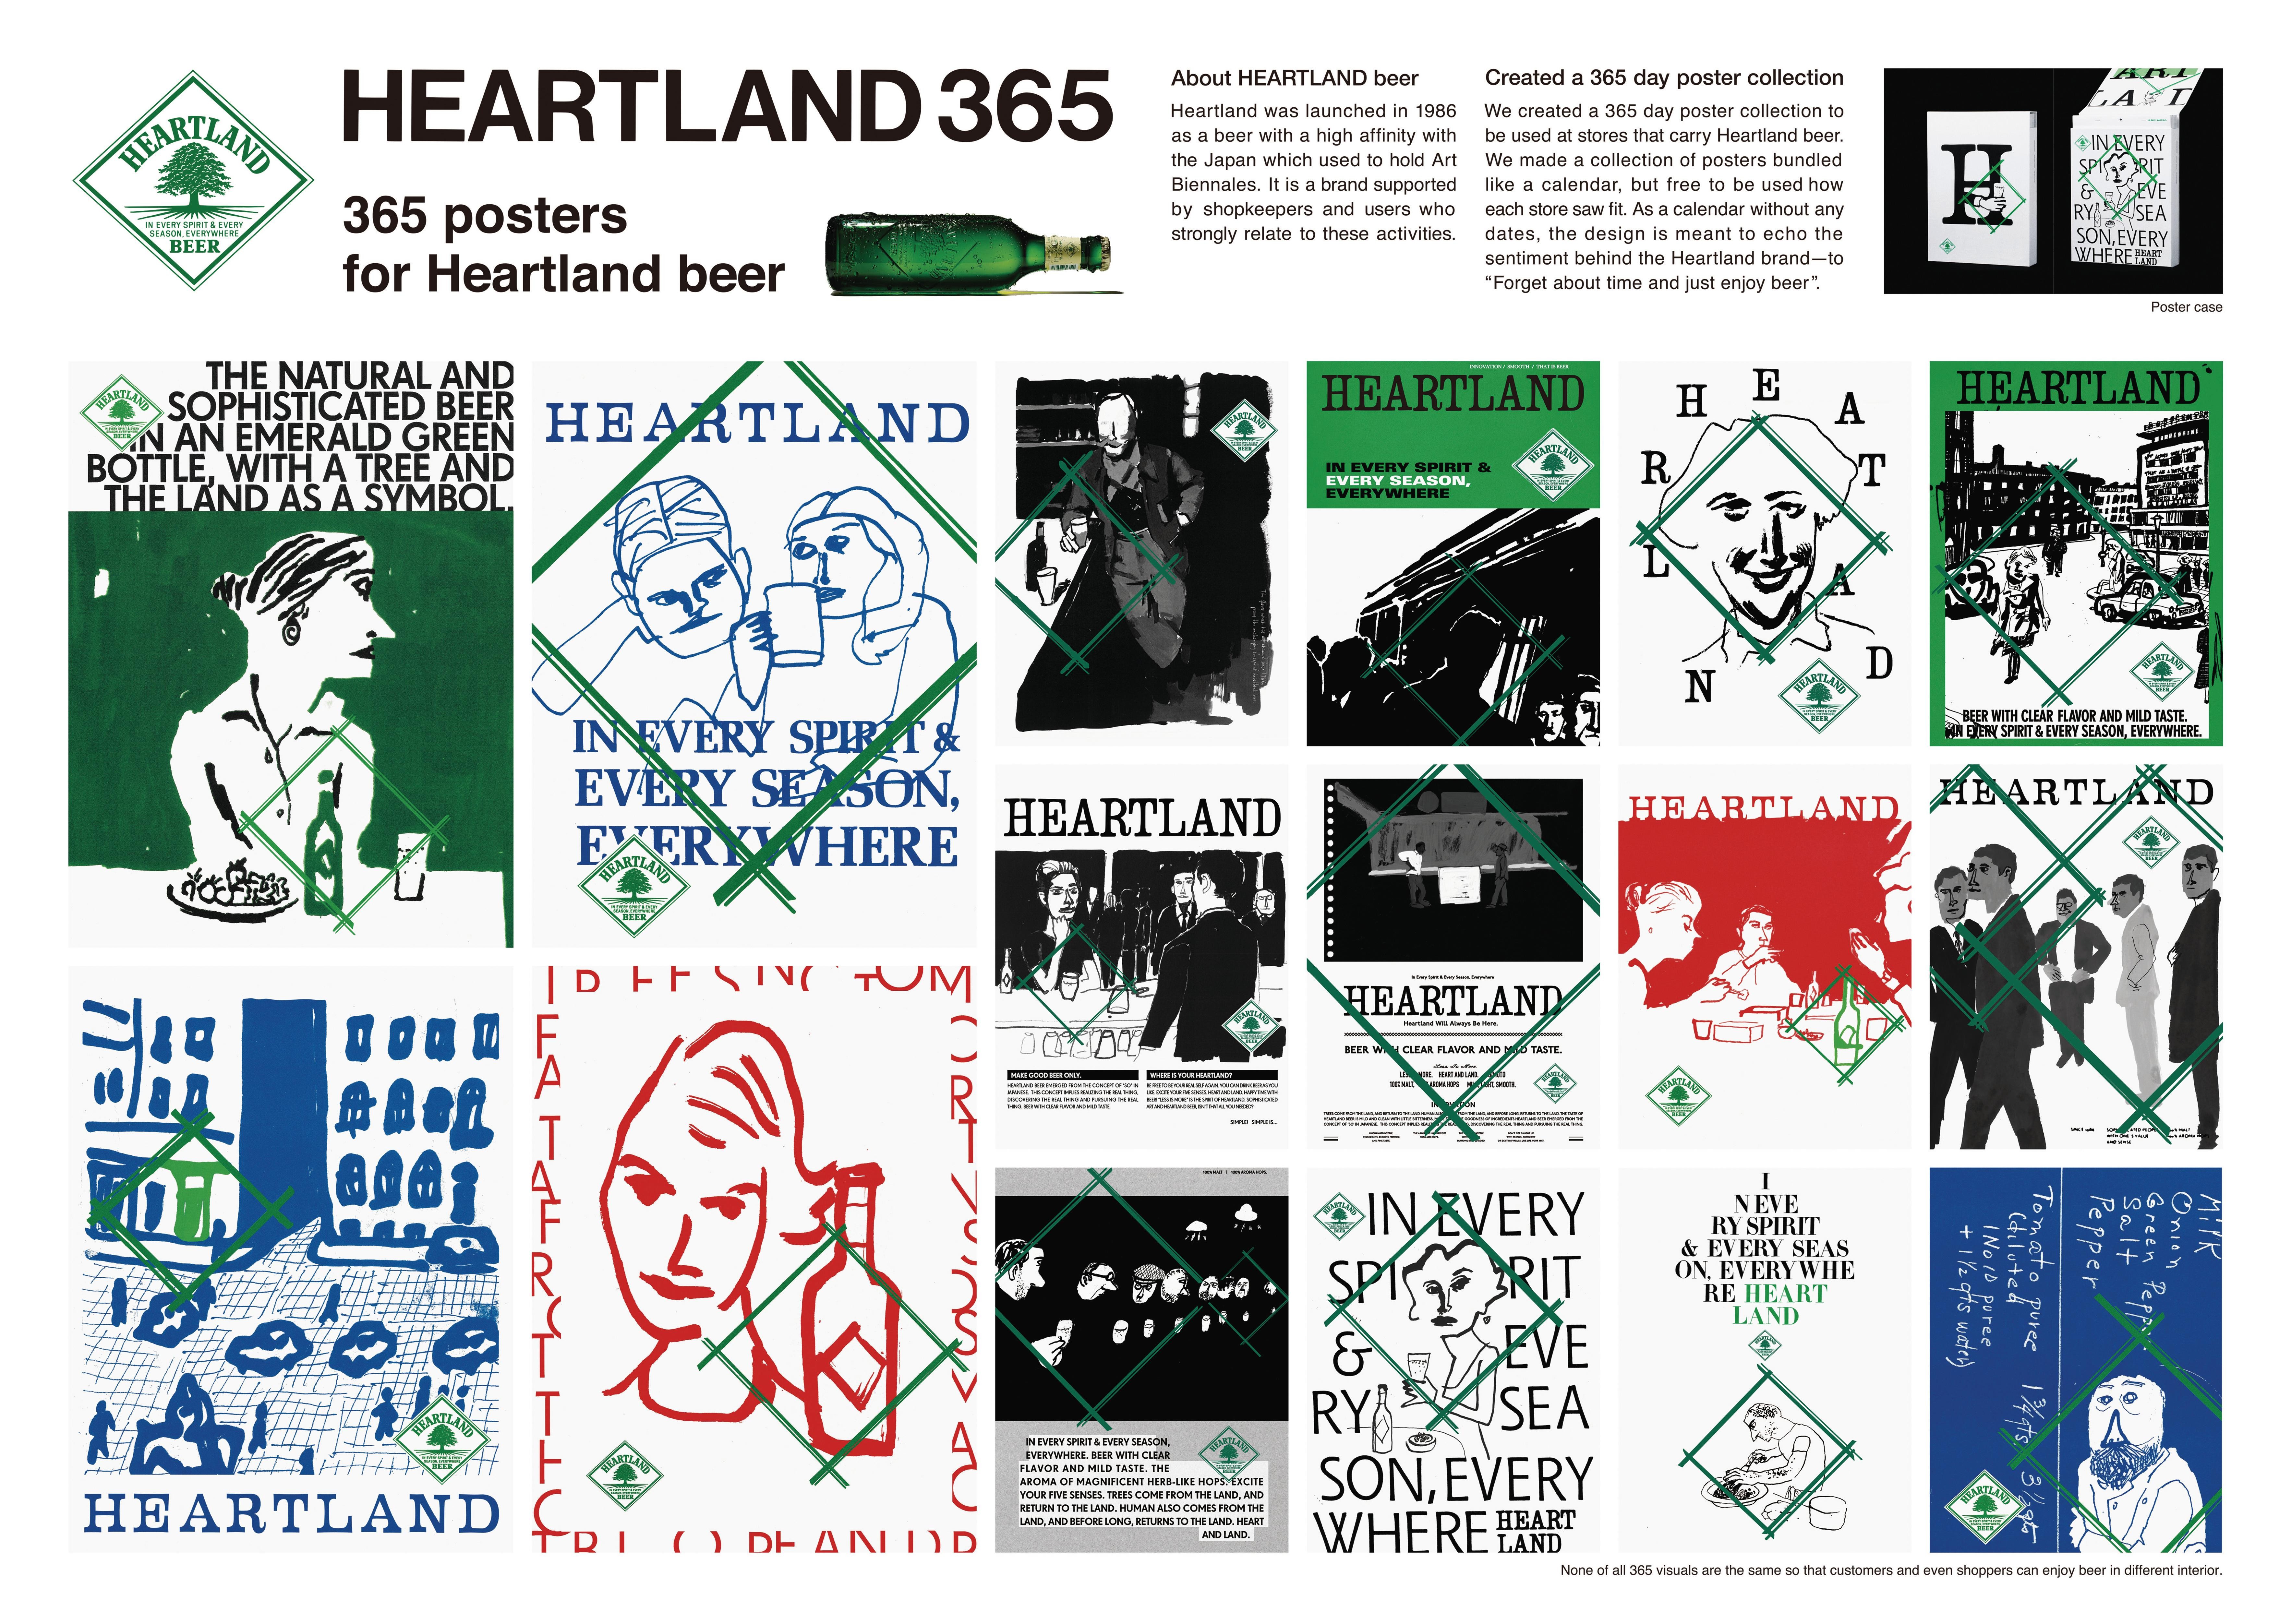 HEARTLNAD 365